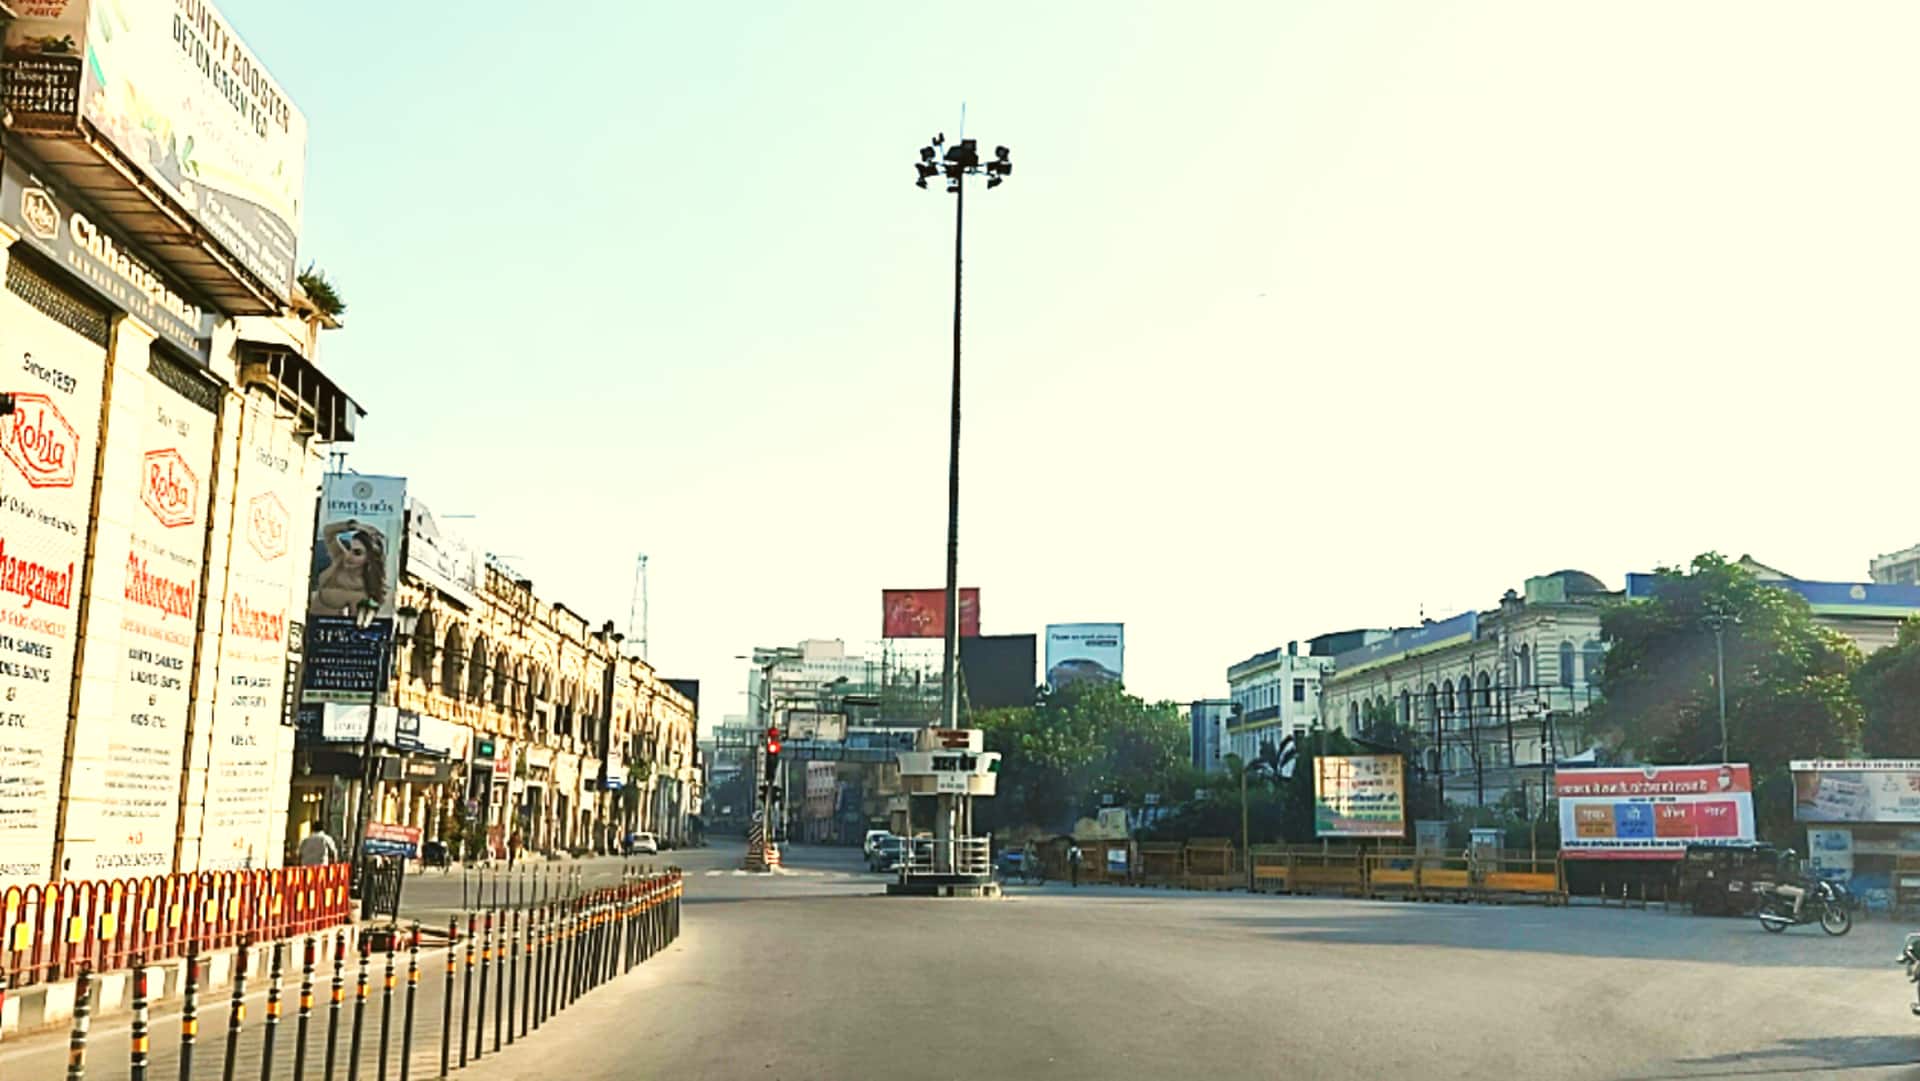 उत्तर प्रदेश: लखनऊ में मुख्यमंत्री कार्यालय से 100 मीटर की दूरी पर कार स्टंट, लोग घबराए